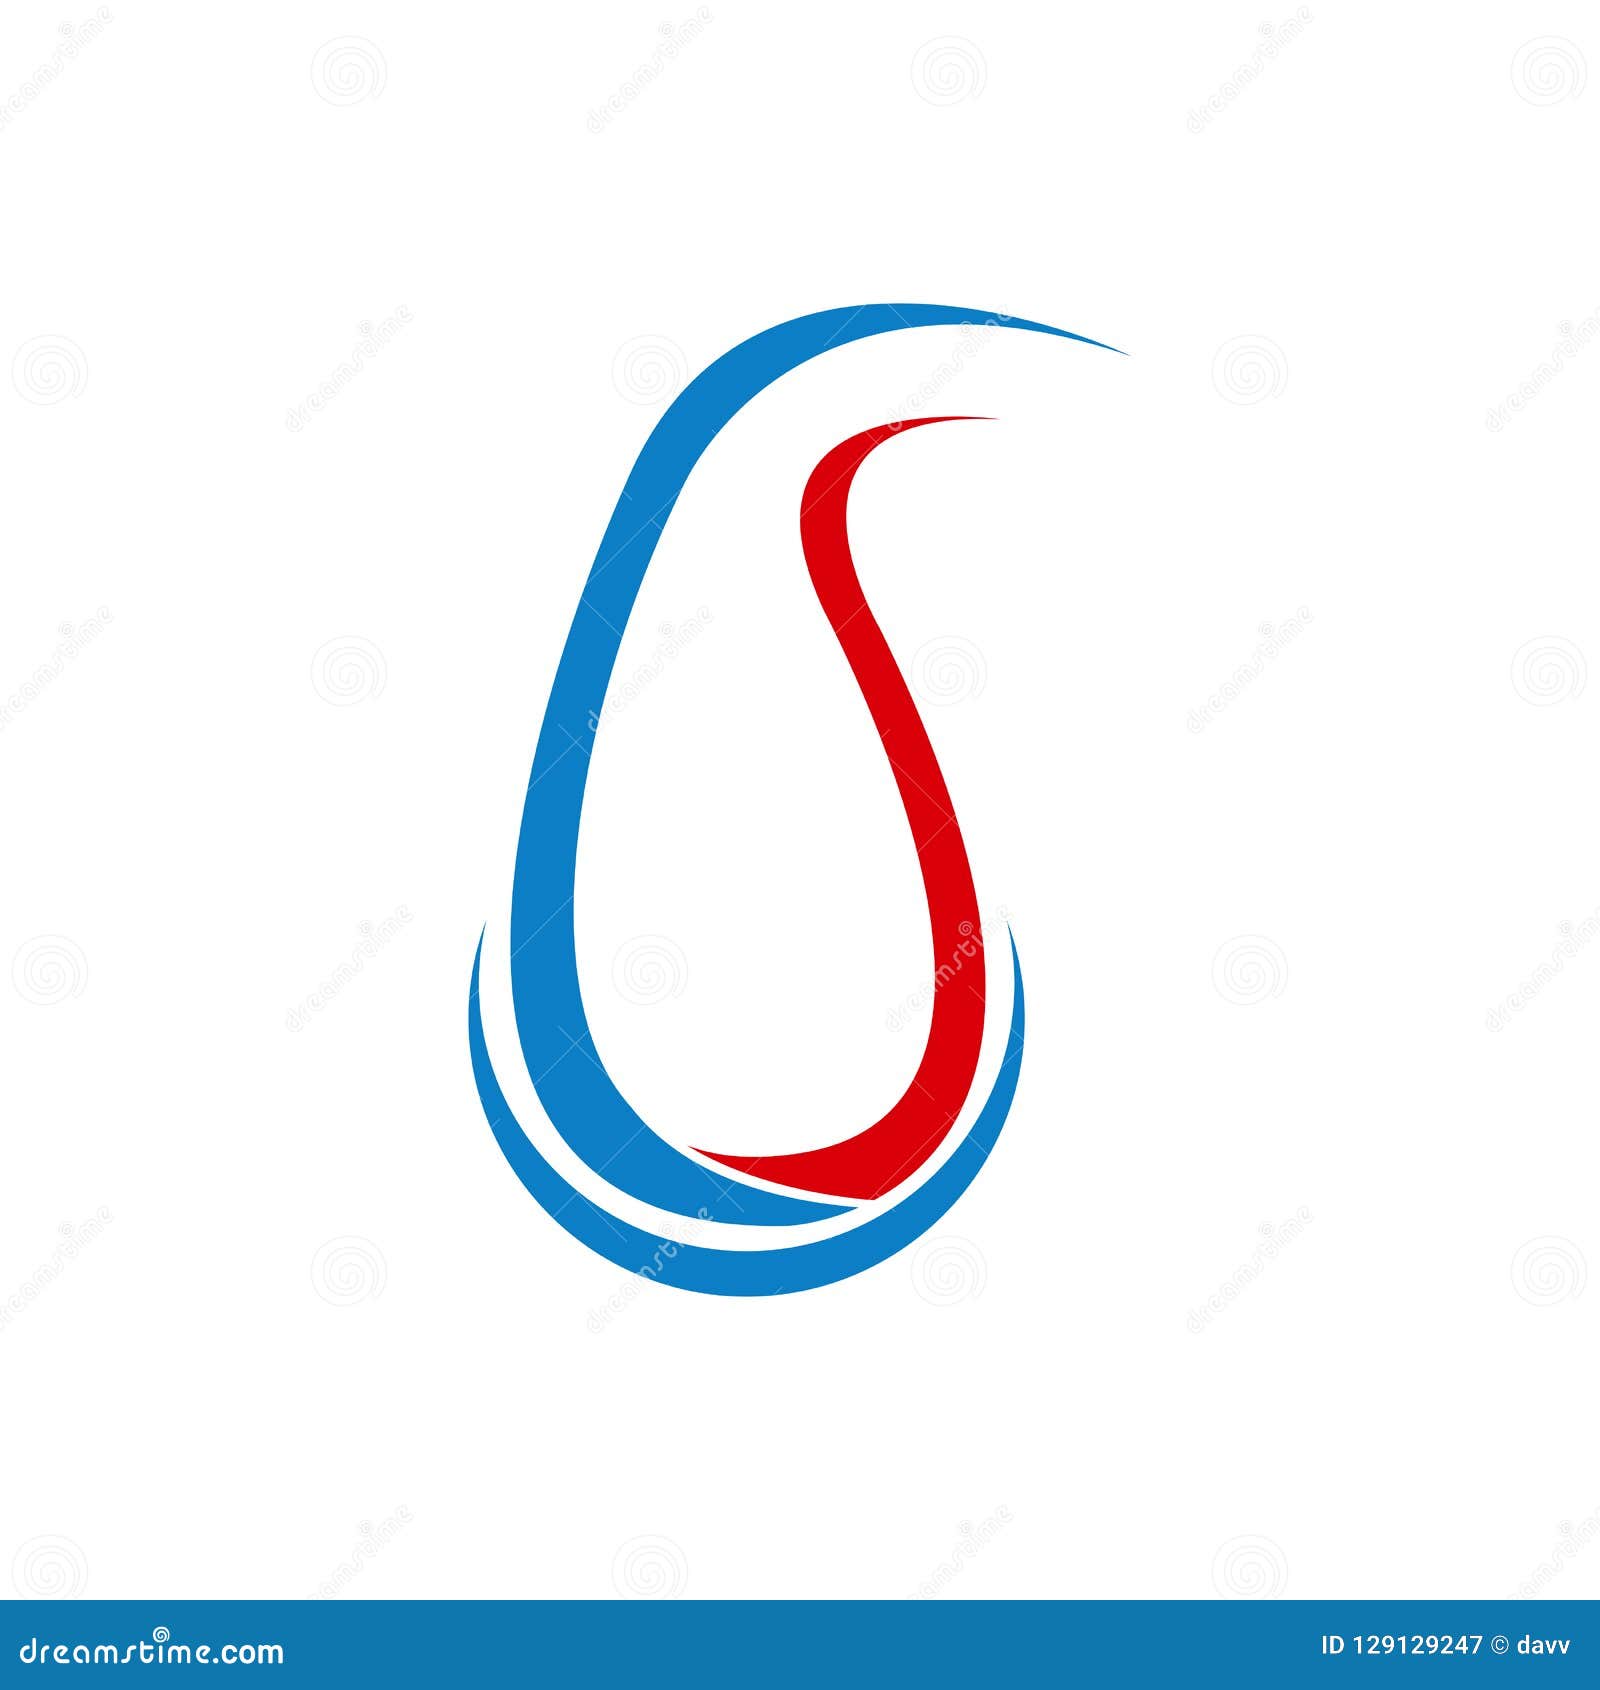 Сине красный логотип. Красно синий логотип. Логотип голубой с красным. Логотип голубой красный синий. Красно синяя капля.